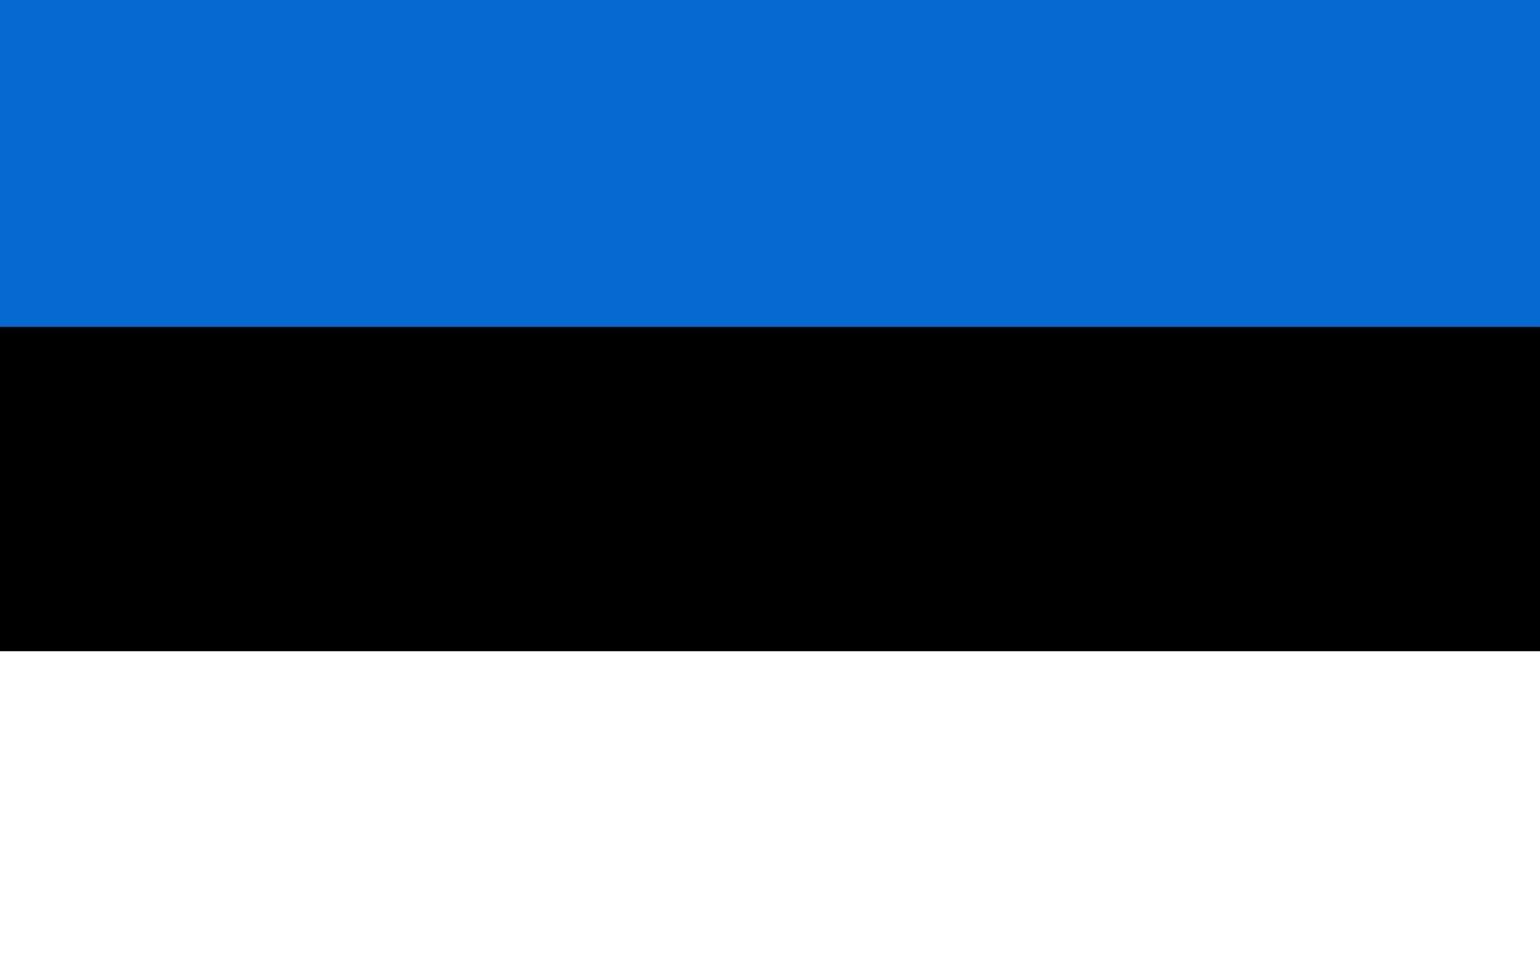 bandera estonia colores oficiales y proporción. bandera nacional estonia. vector